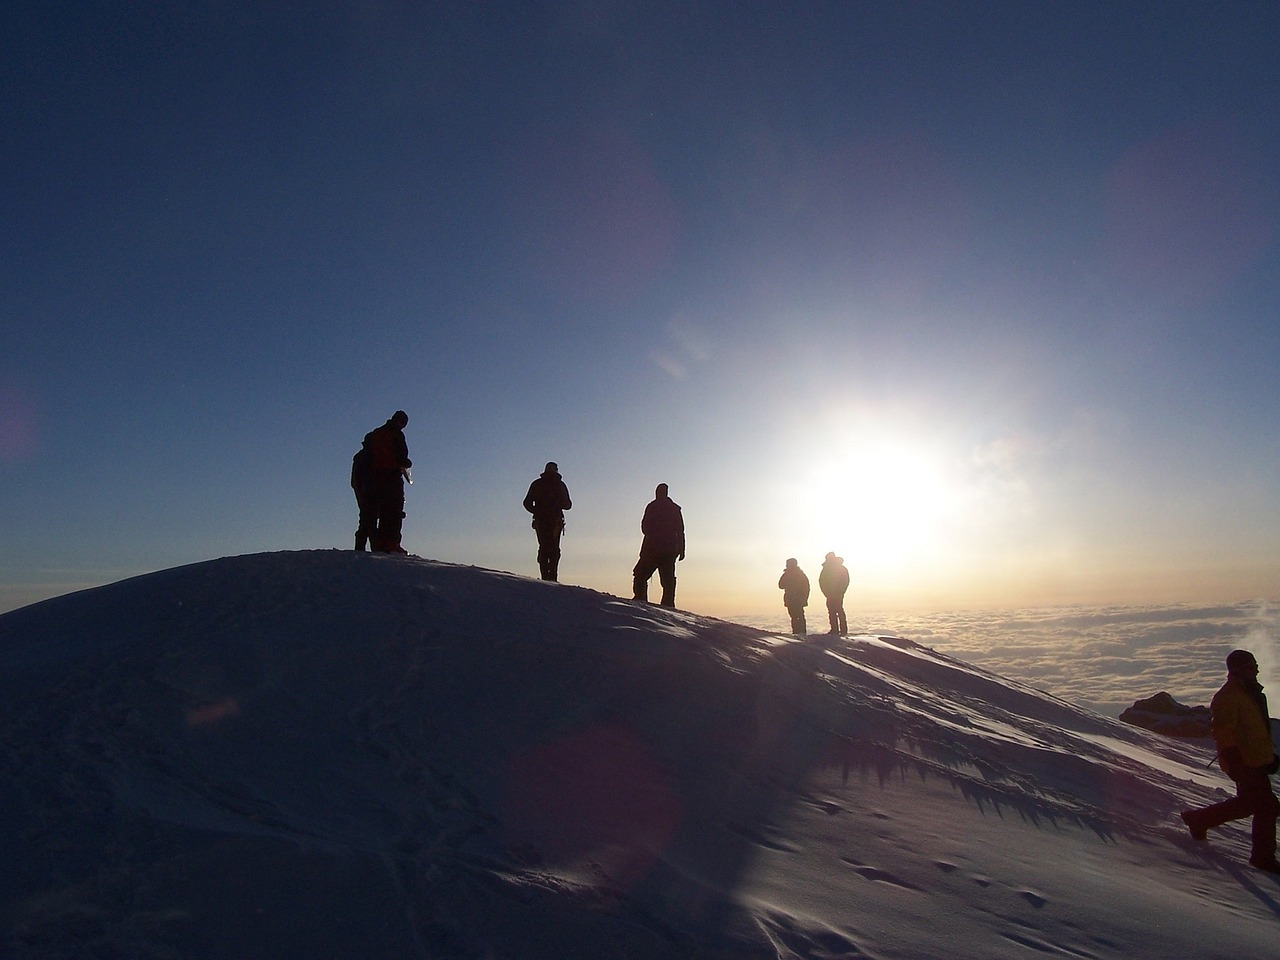 Alpinistai, Siluetai, Piko, Nuotykis, Iššūkis, Kalnas Mckinley, Alaska, Usa, Lauke, Pasiekimas